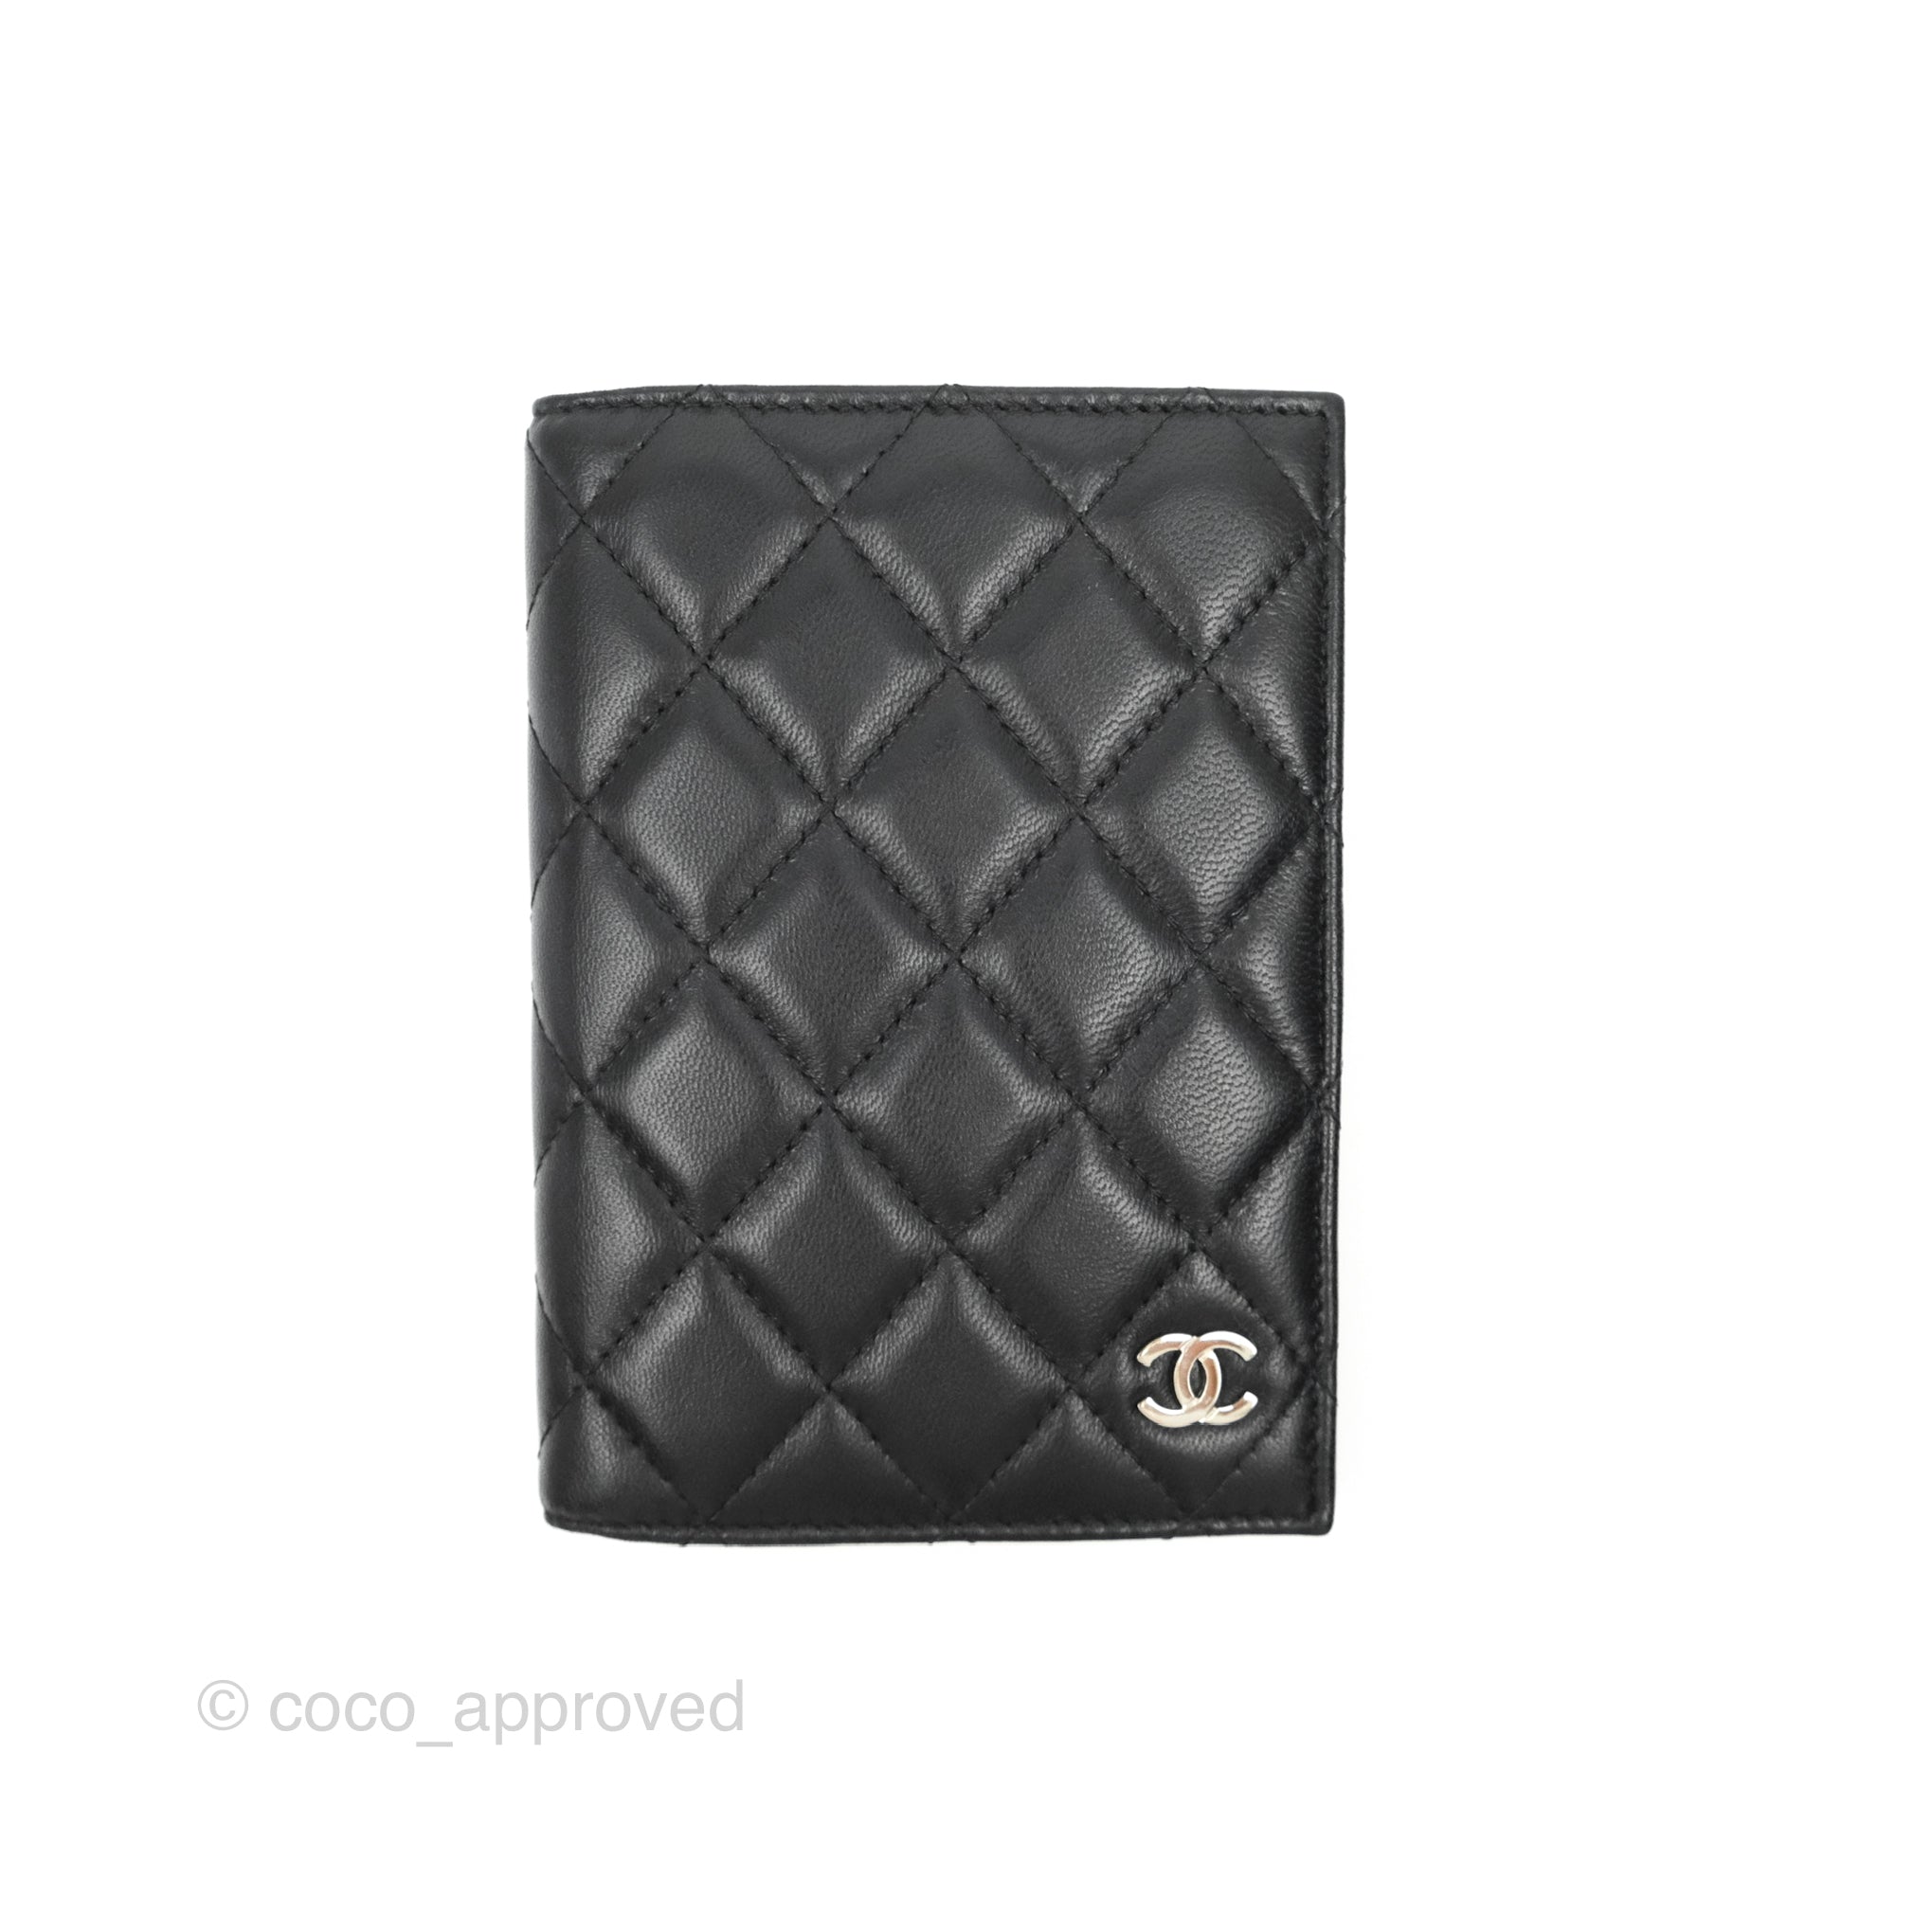 Passport holder #chanel #passportchallenge #chanelbag #luxuryfashion, Chanel Bag